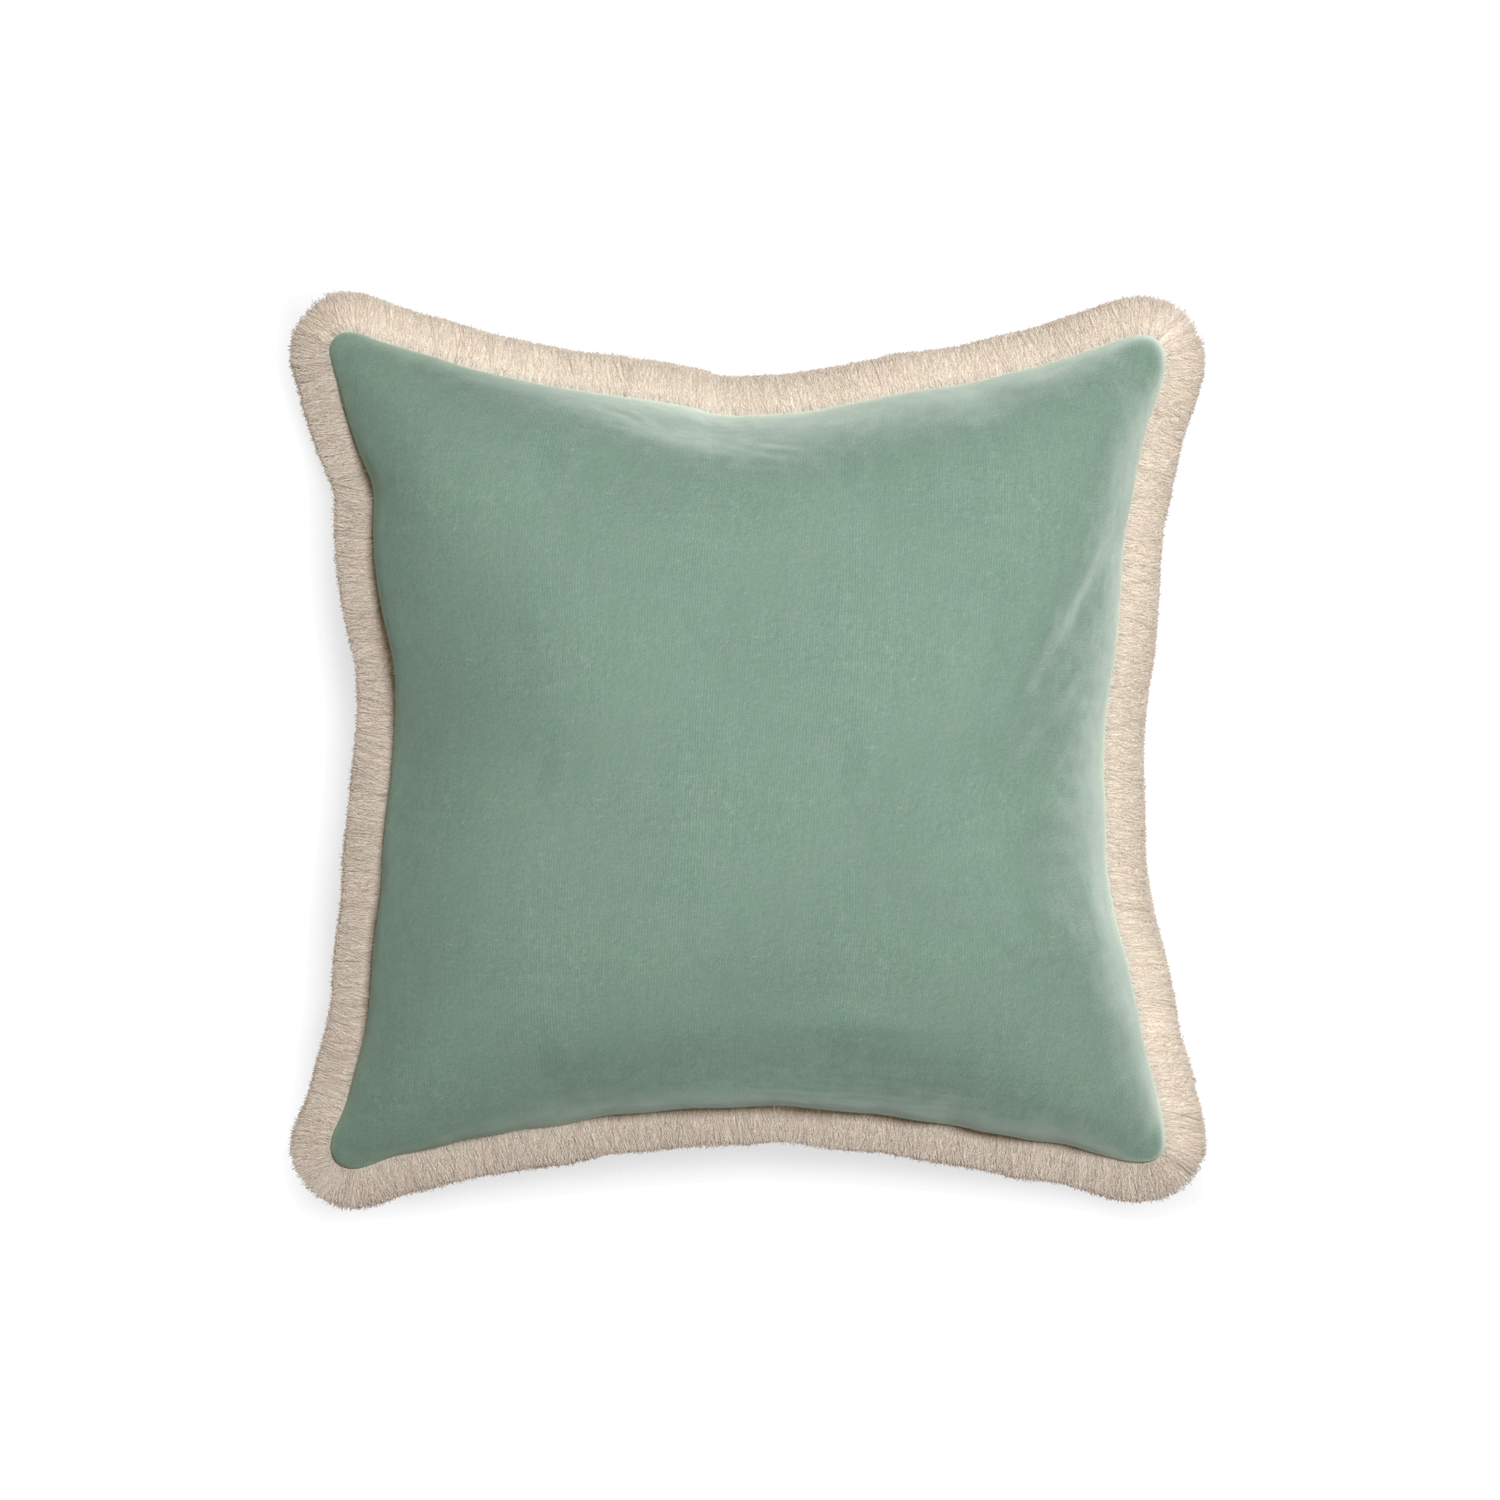 square blue green velvet pillow with cream fringe